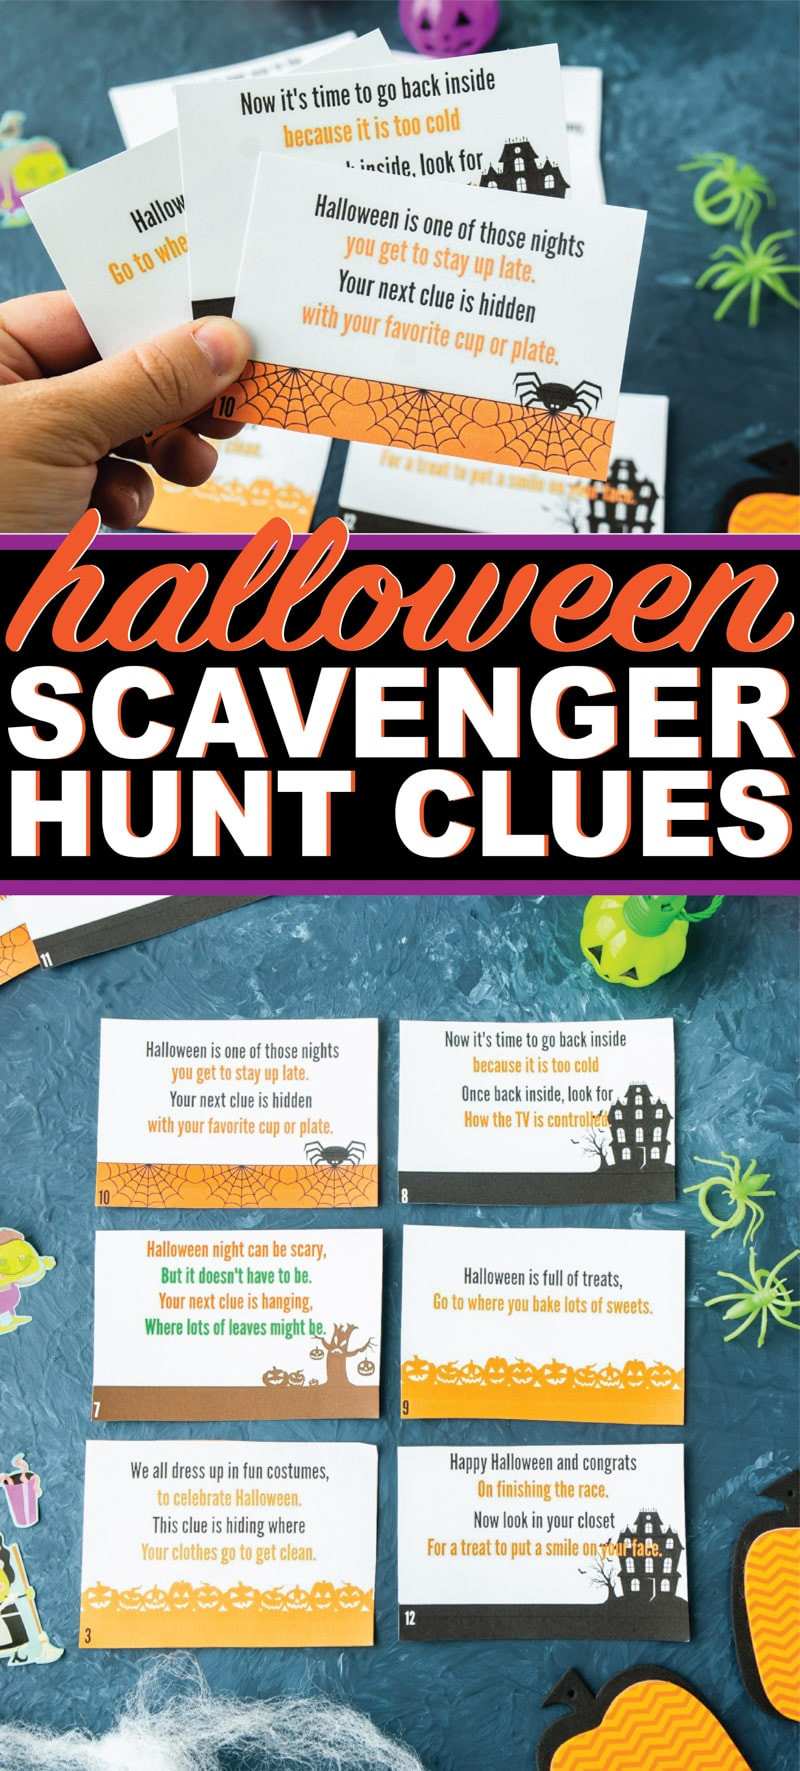 Indoor Halloween Scavenger Hunt Clues
 Free Printable Halloween Scavenger Hunt That s Perfect for